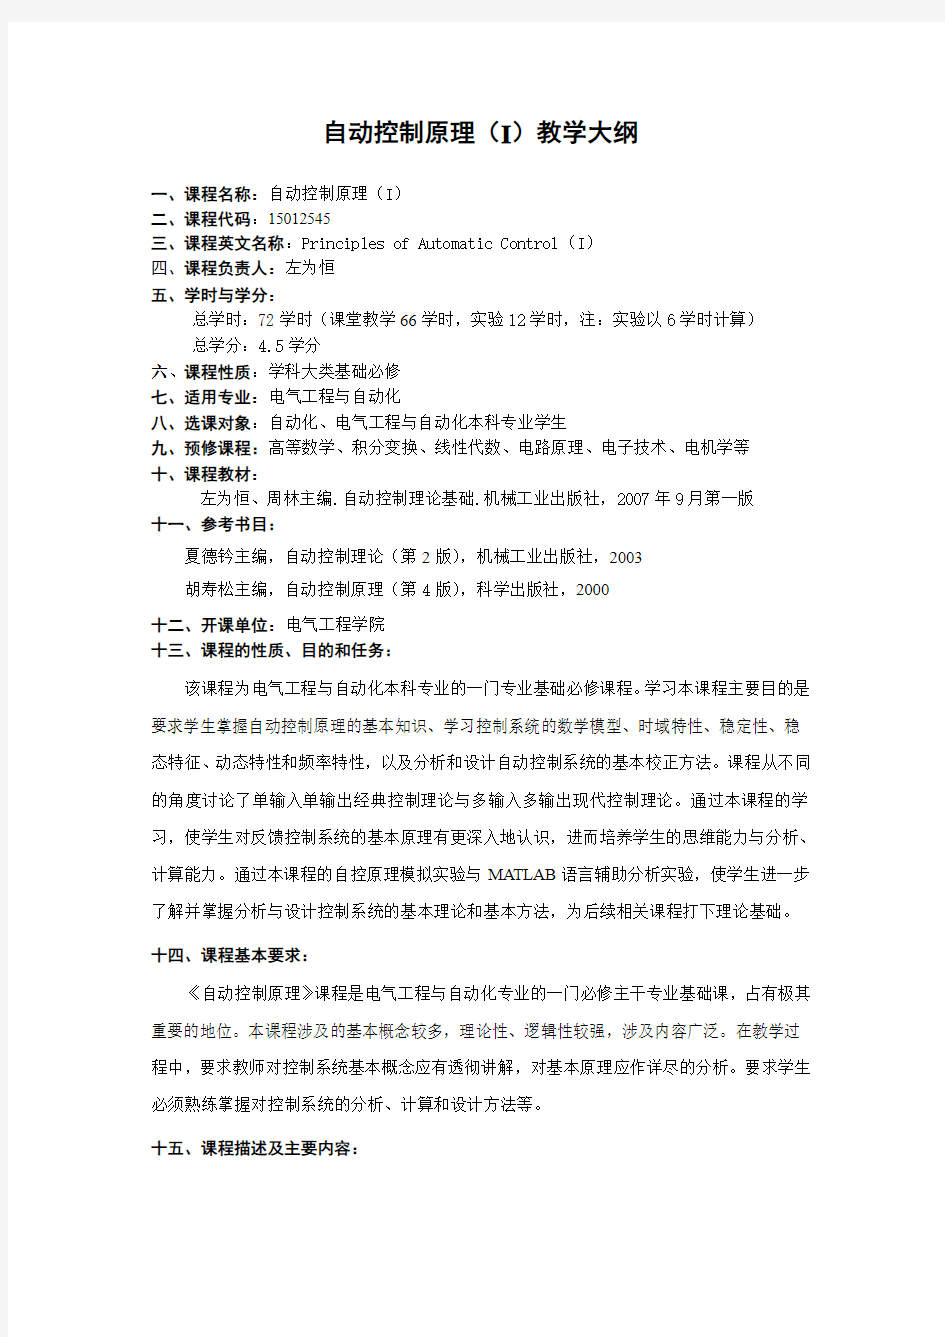 重庆大学 电气工程考研  教学大纲-自动控制原理201109